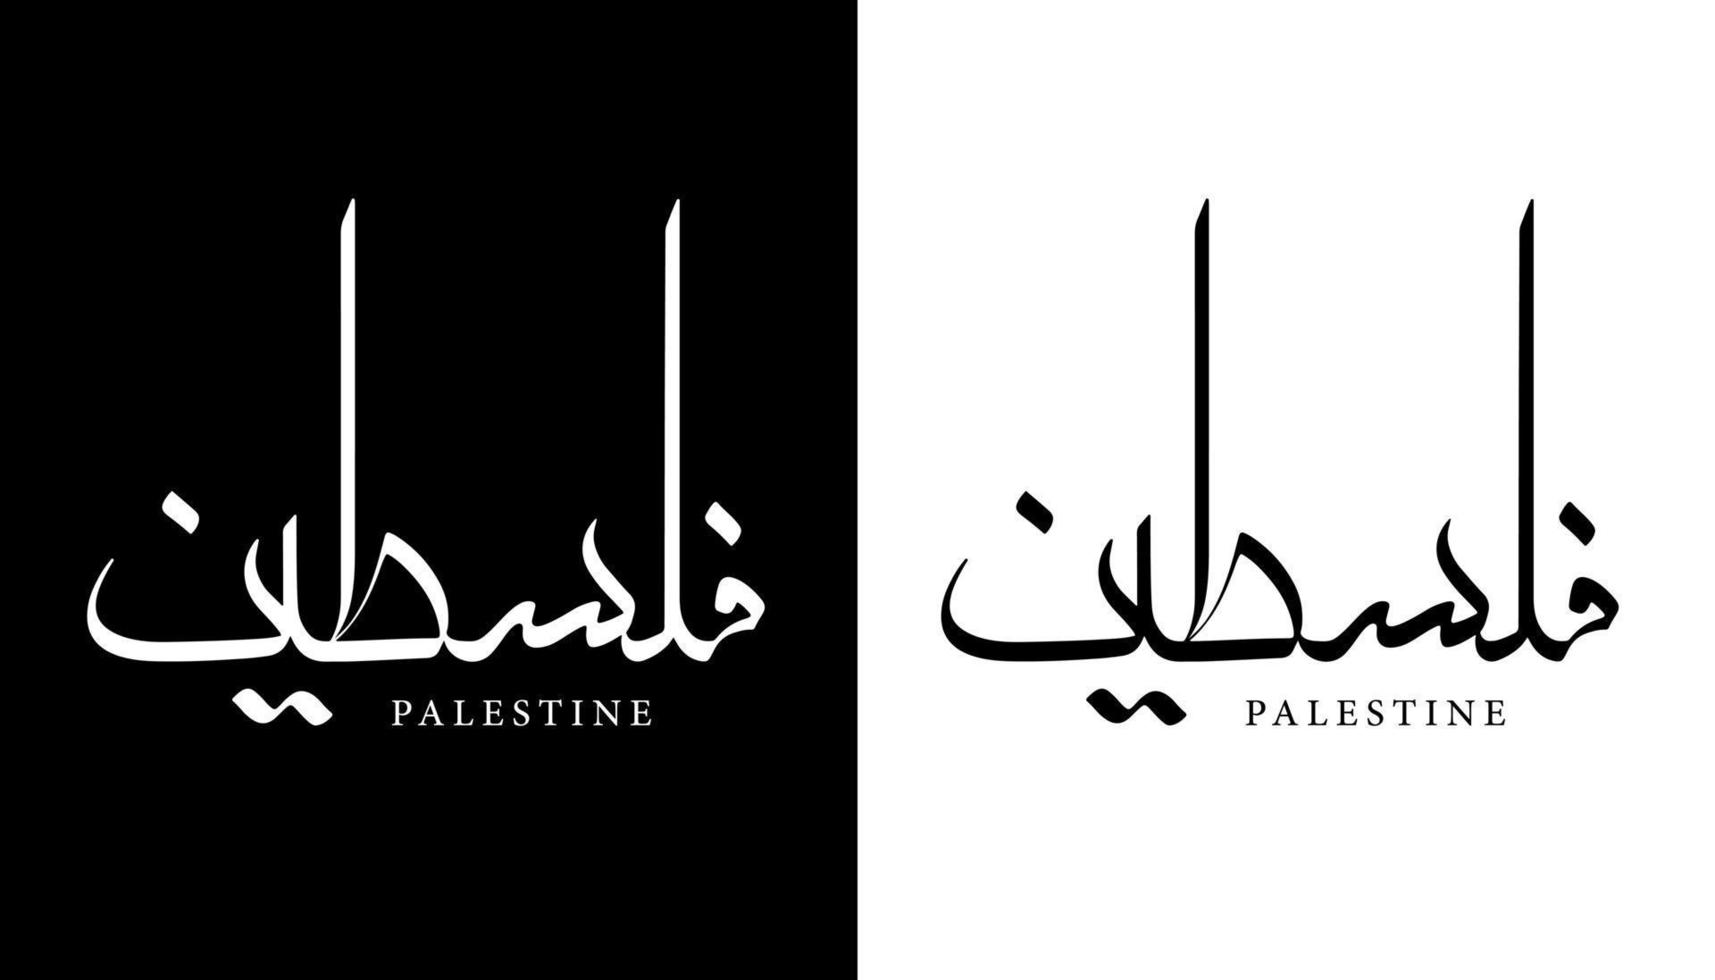 Arabische kalligrafie naam vertaald 'palestina' Arabische letters alfabet lettertype belettering islamitische logo vectorillustratie vector